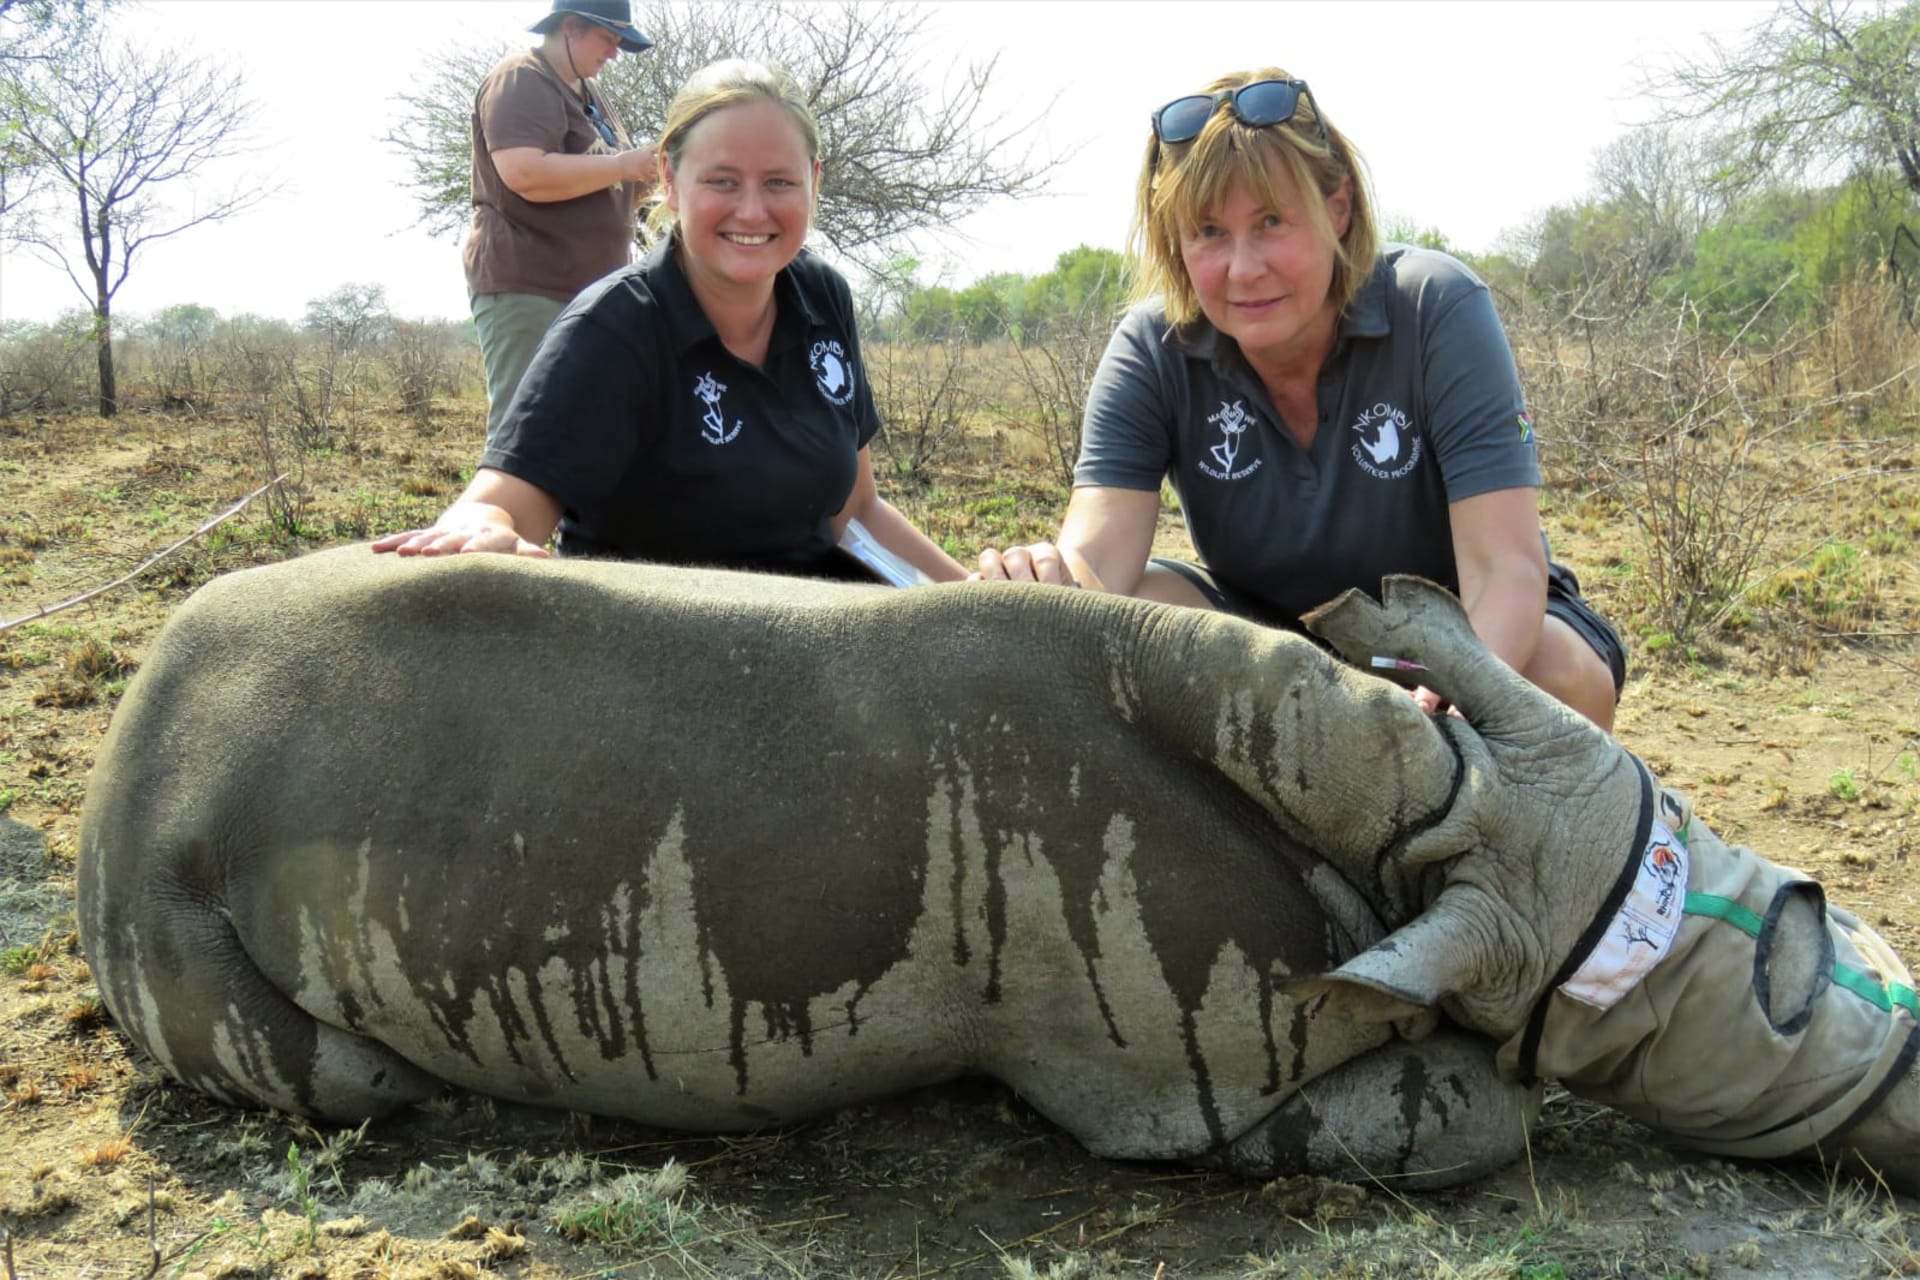 Dobrovolnice Hana u dstraňování nosorožčích rohů